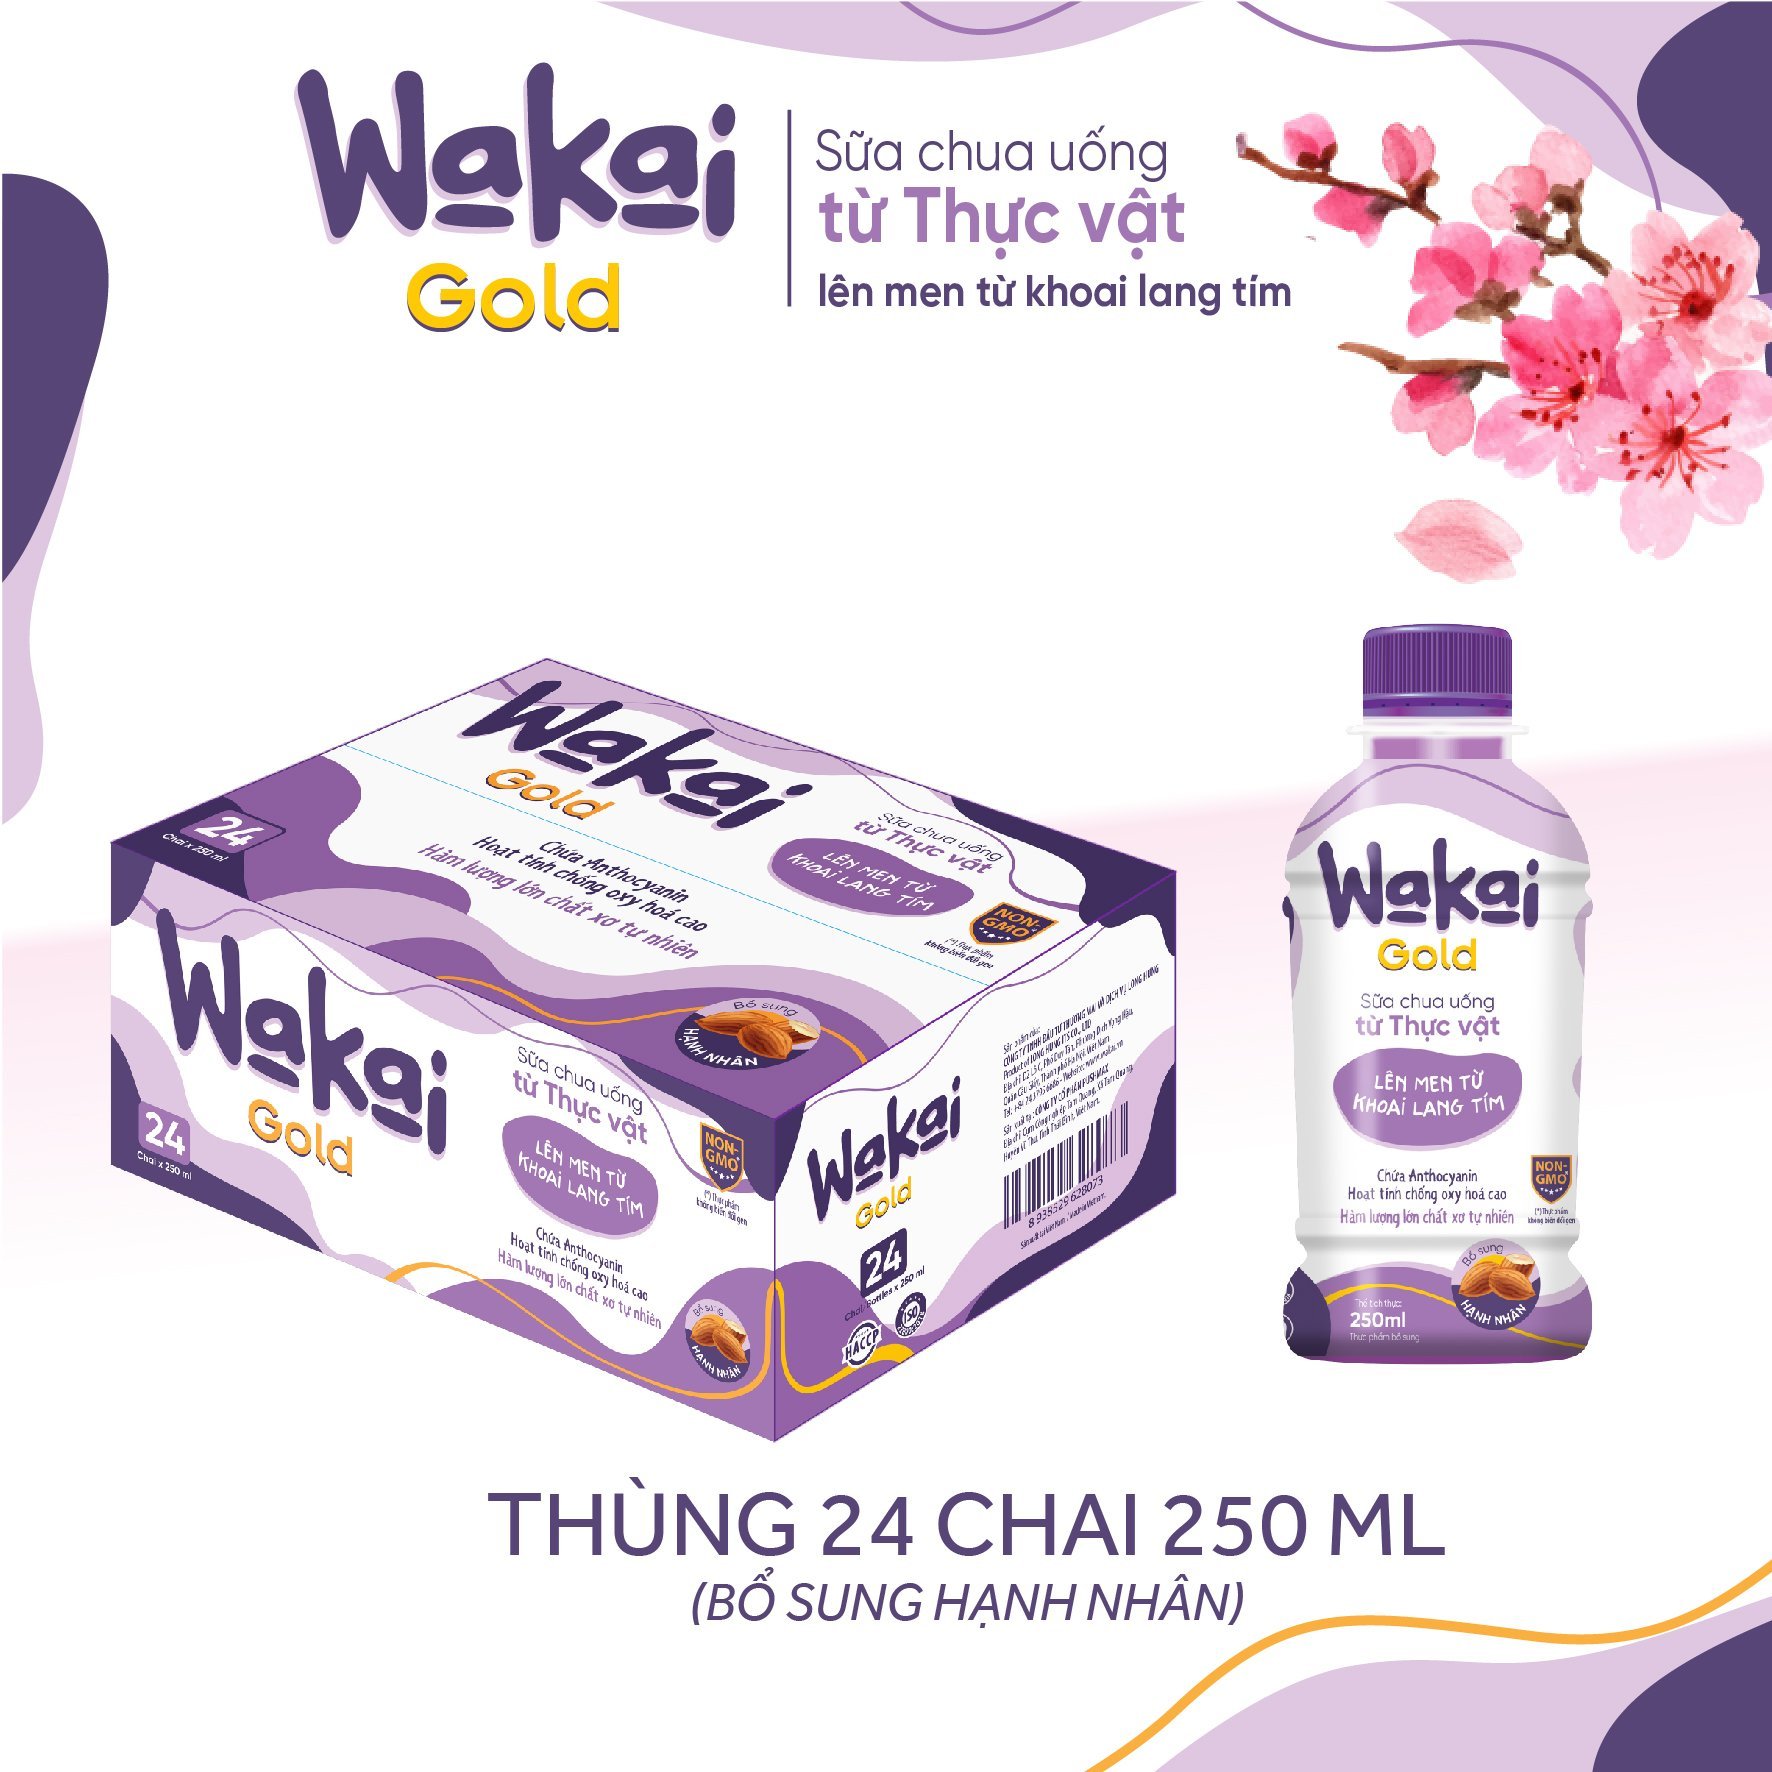 Thùng 24 Chai Sữa Chua Uống từ Thực Vật Wakai Gold (250ml x 24 Chai)